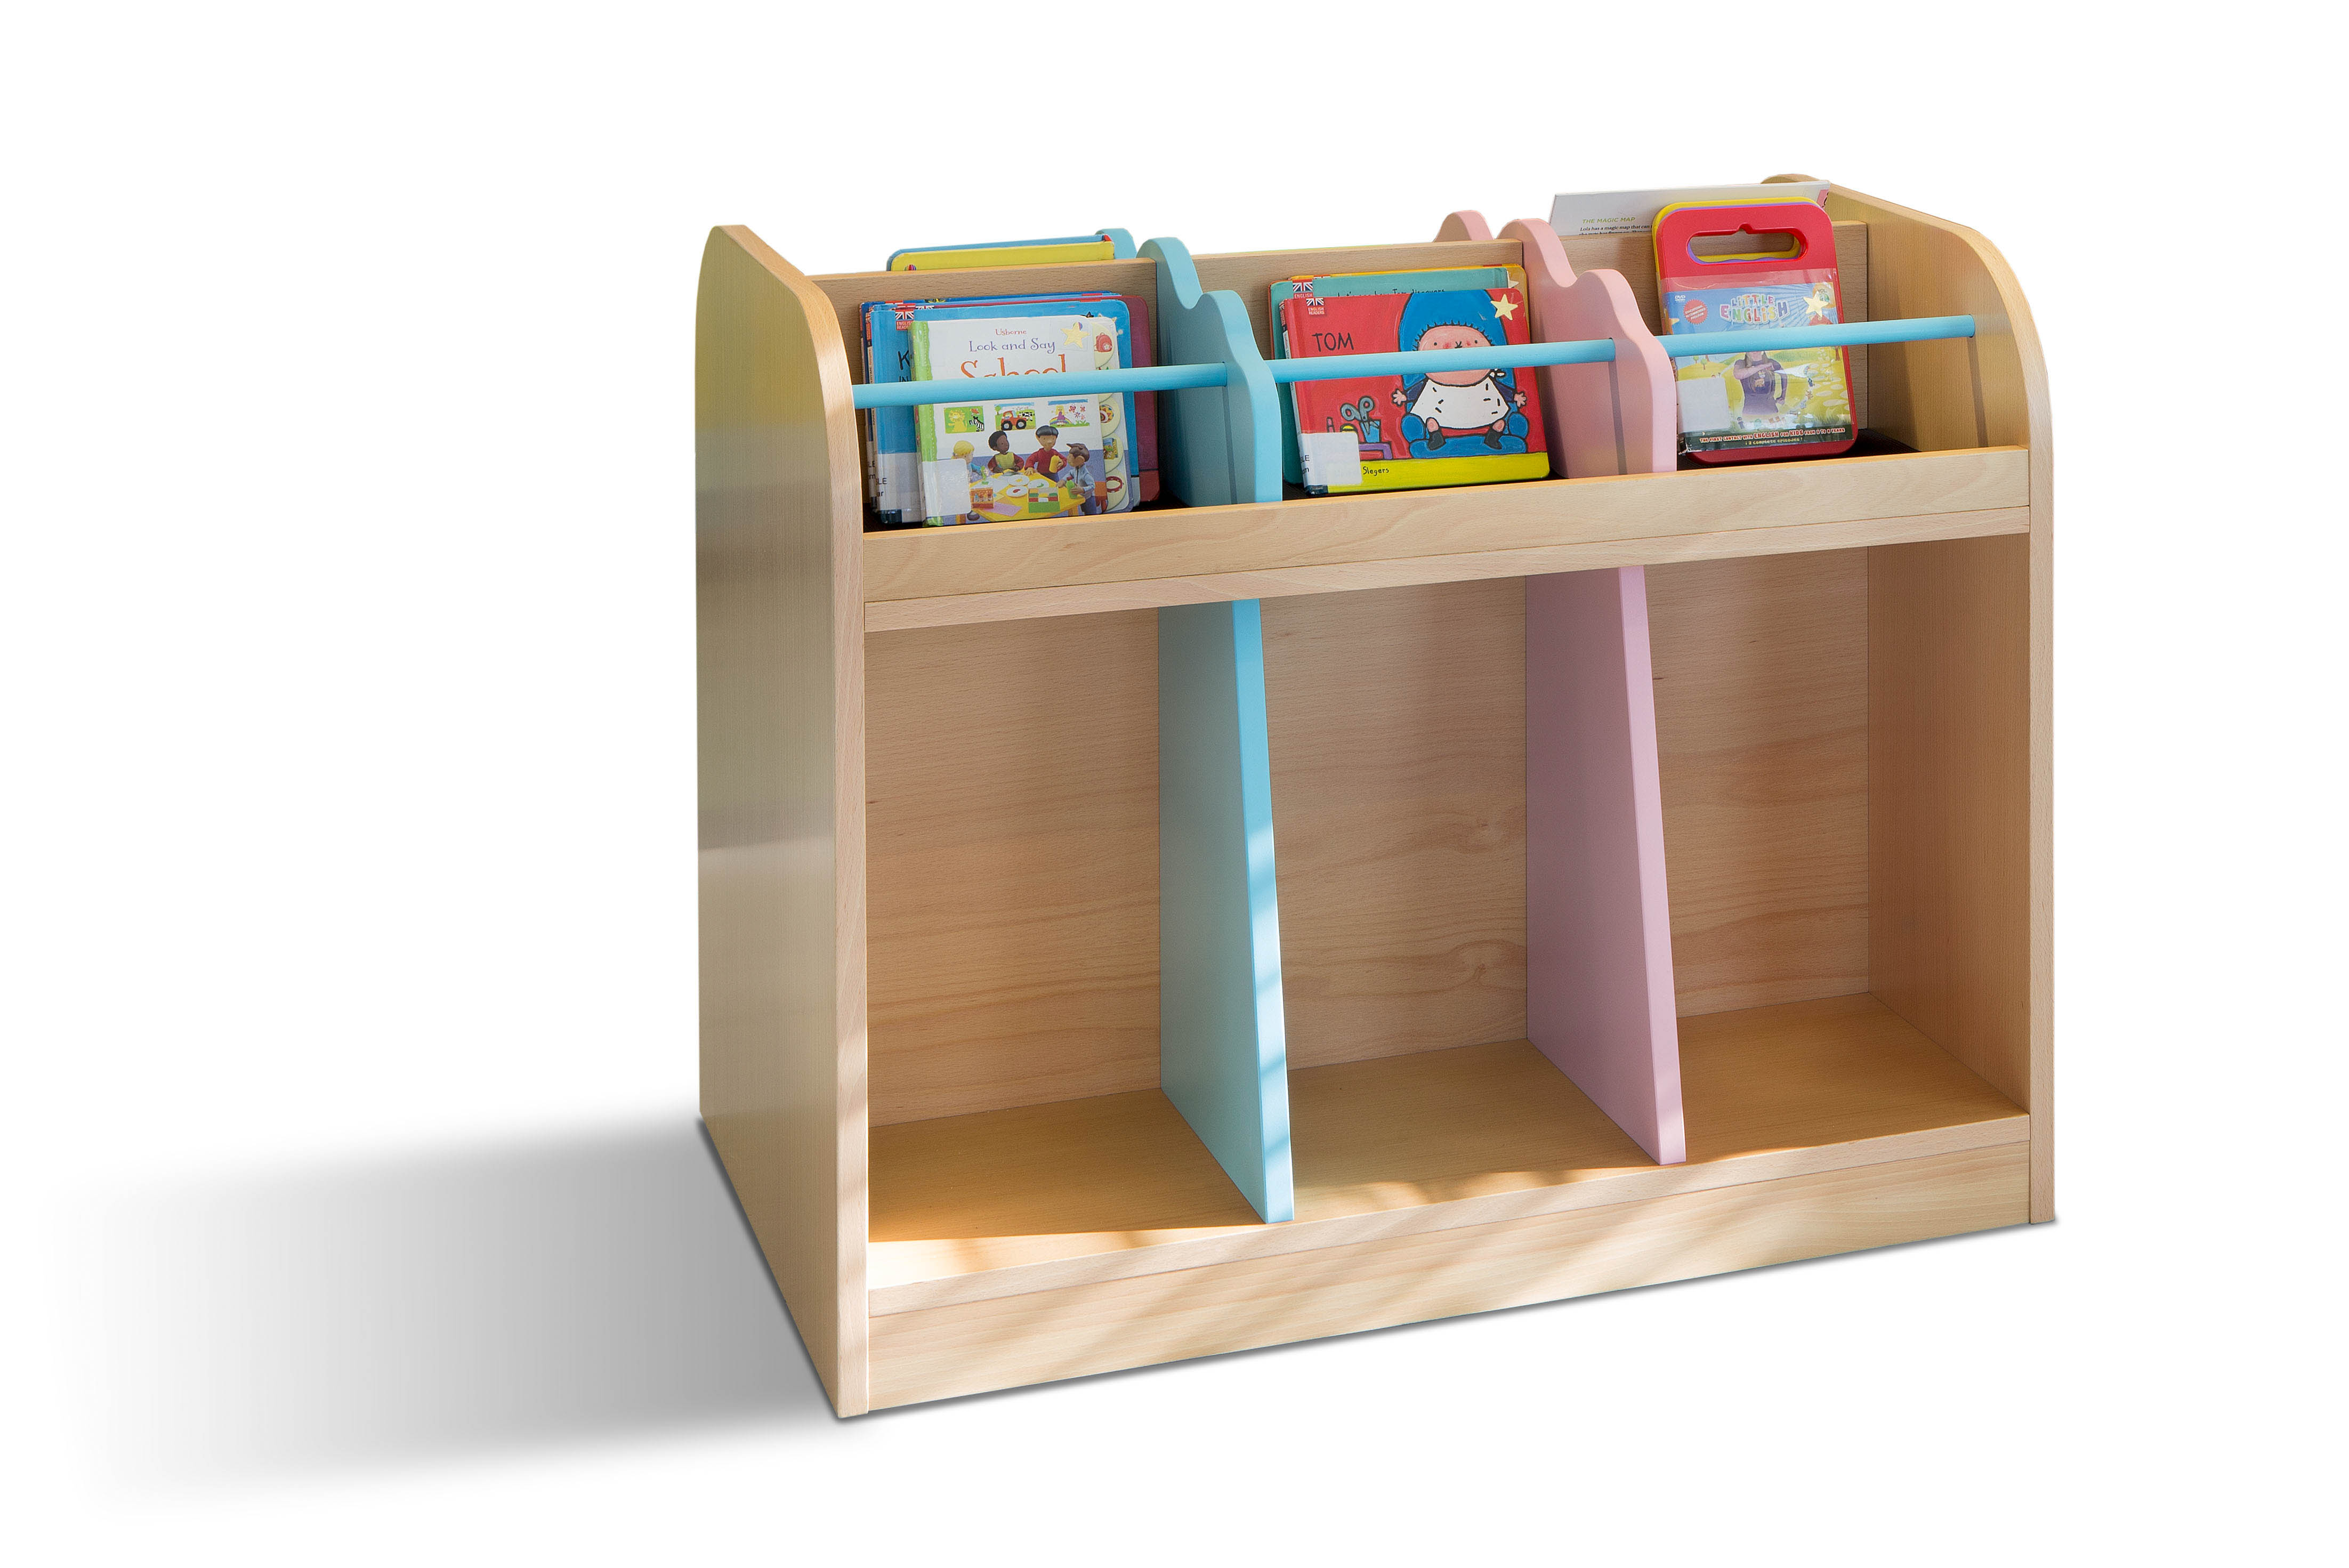 METALUNDI meuble porte livre pour enfants, adapté a leurs tailles et avec des couleurs attayantes.